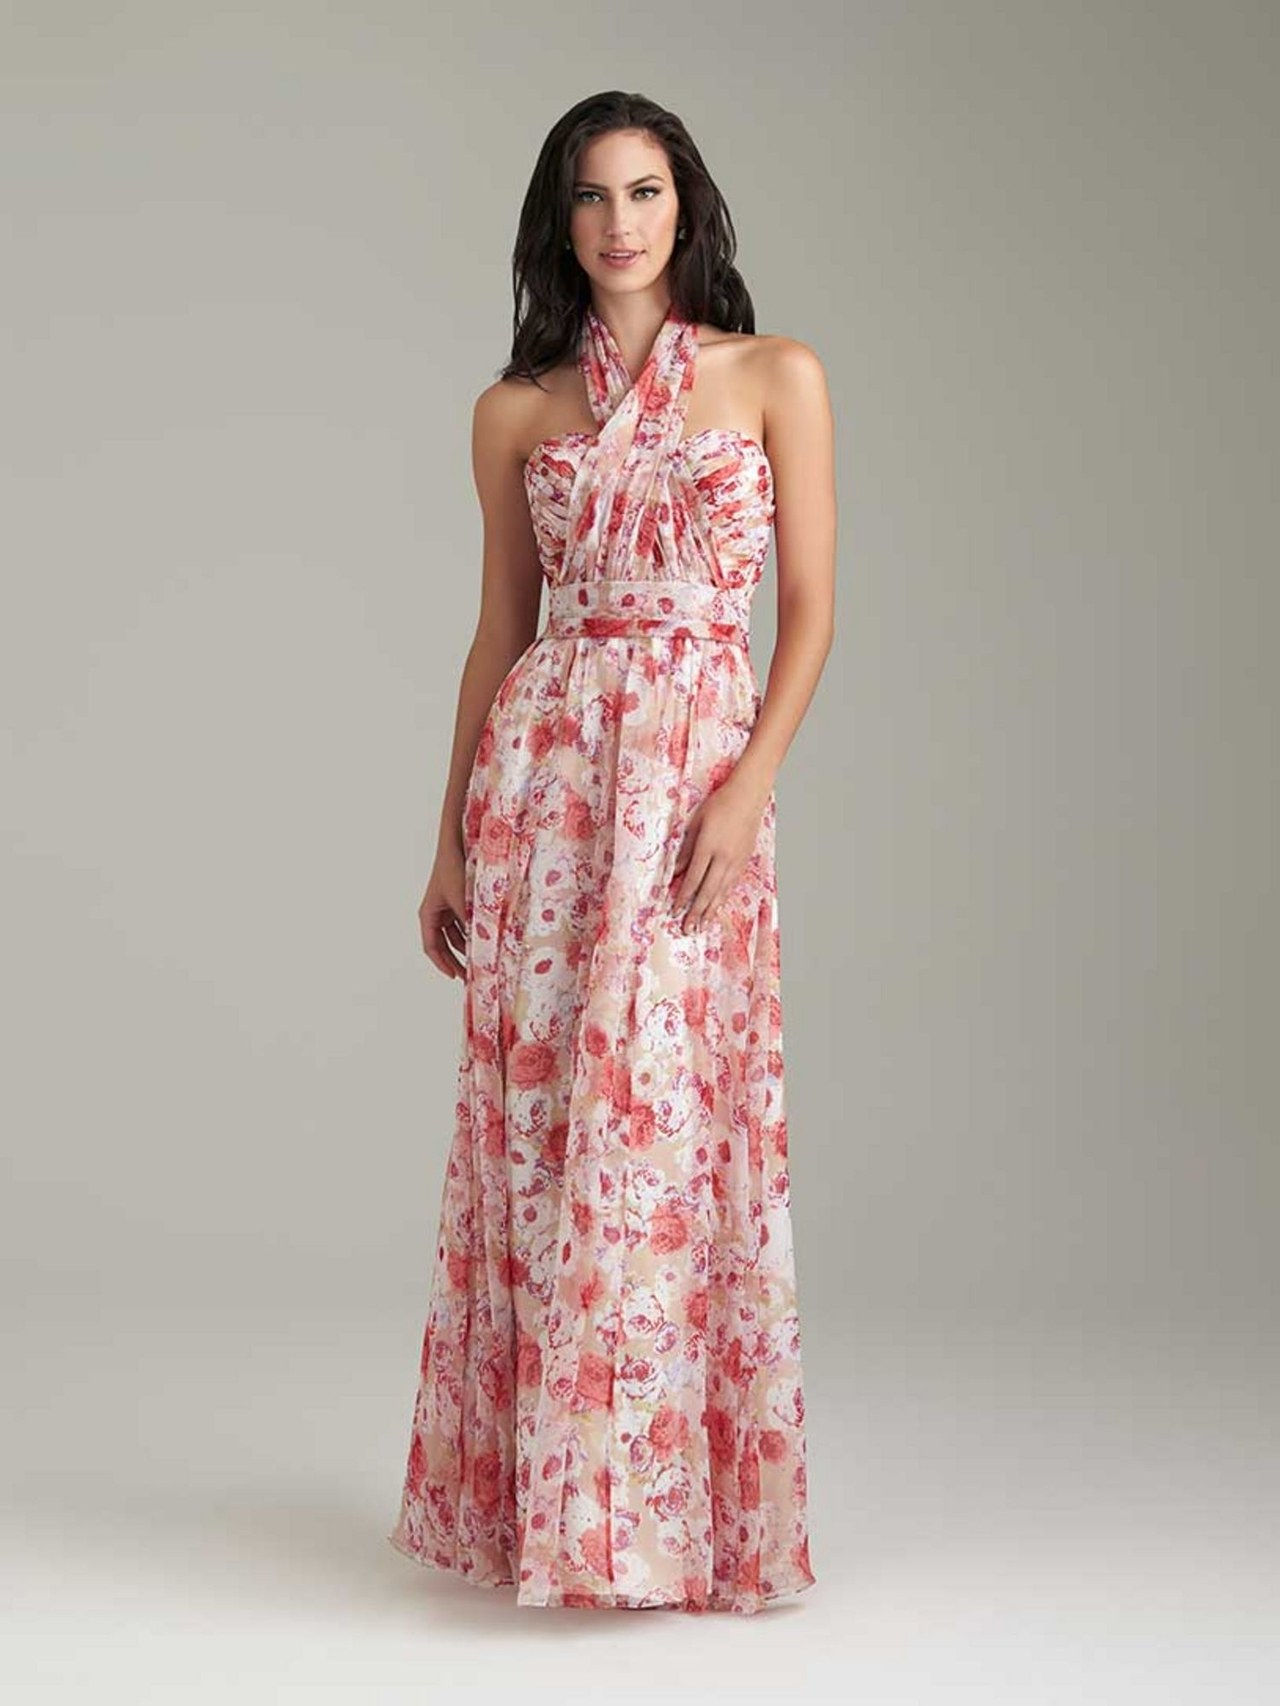 dieciséis floral bridesmaid dresses 0127 courtesy